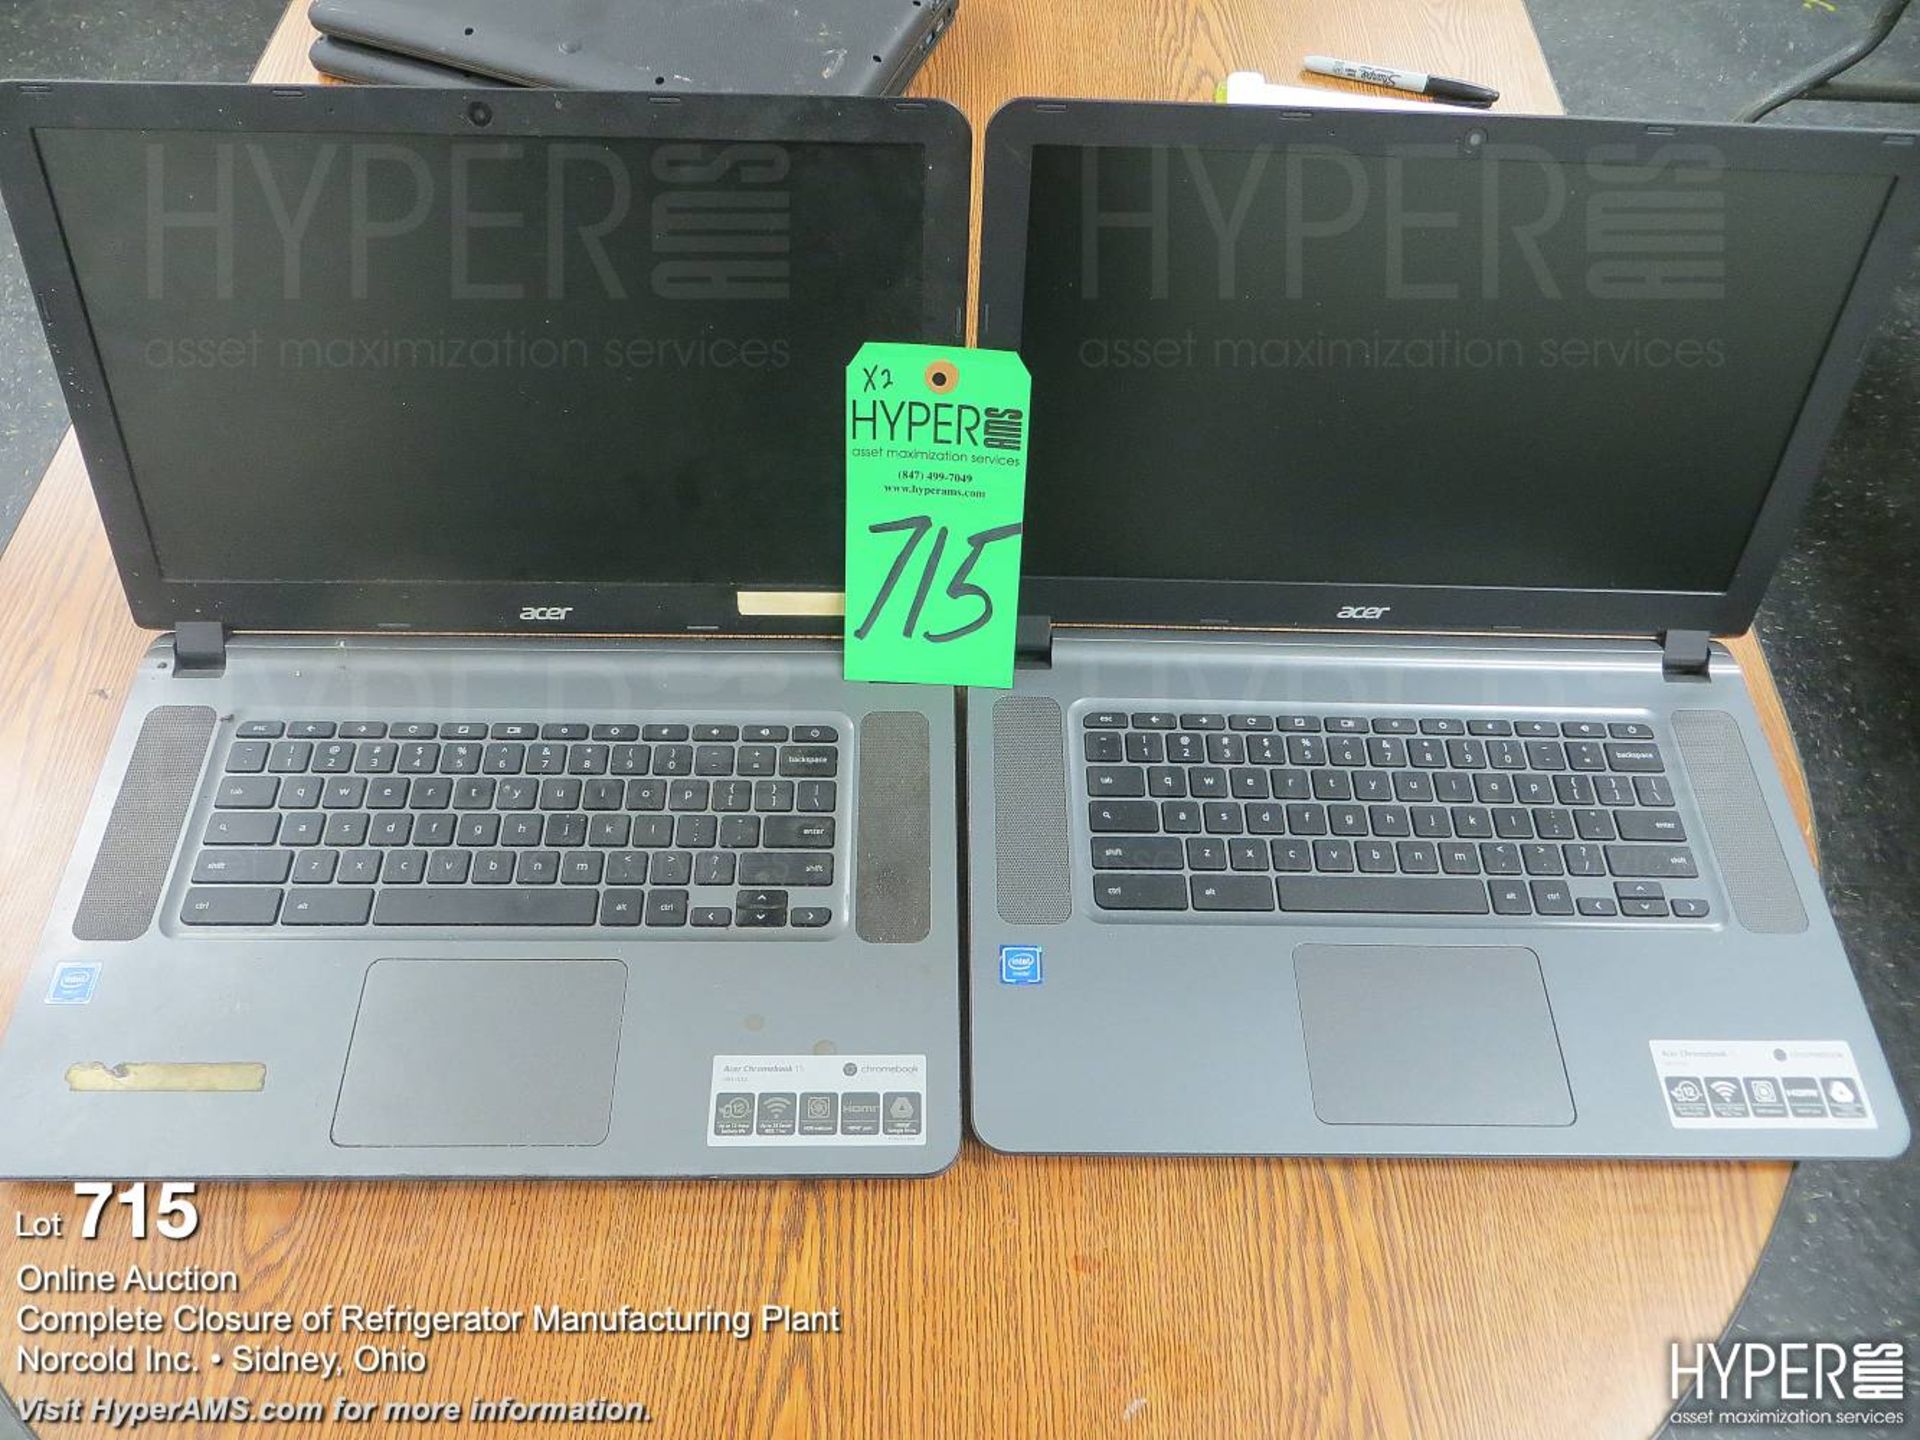 (2) Acer laptops